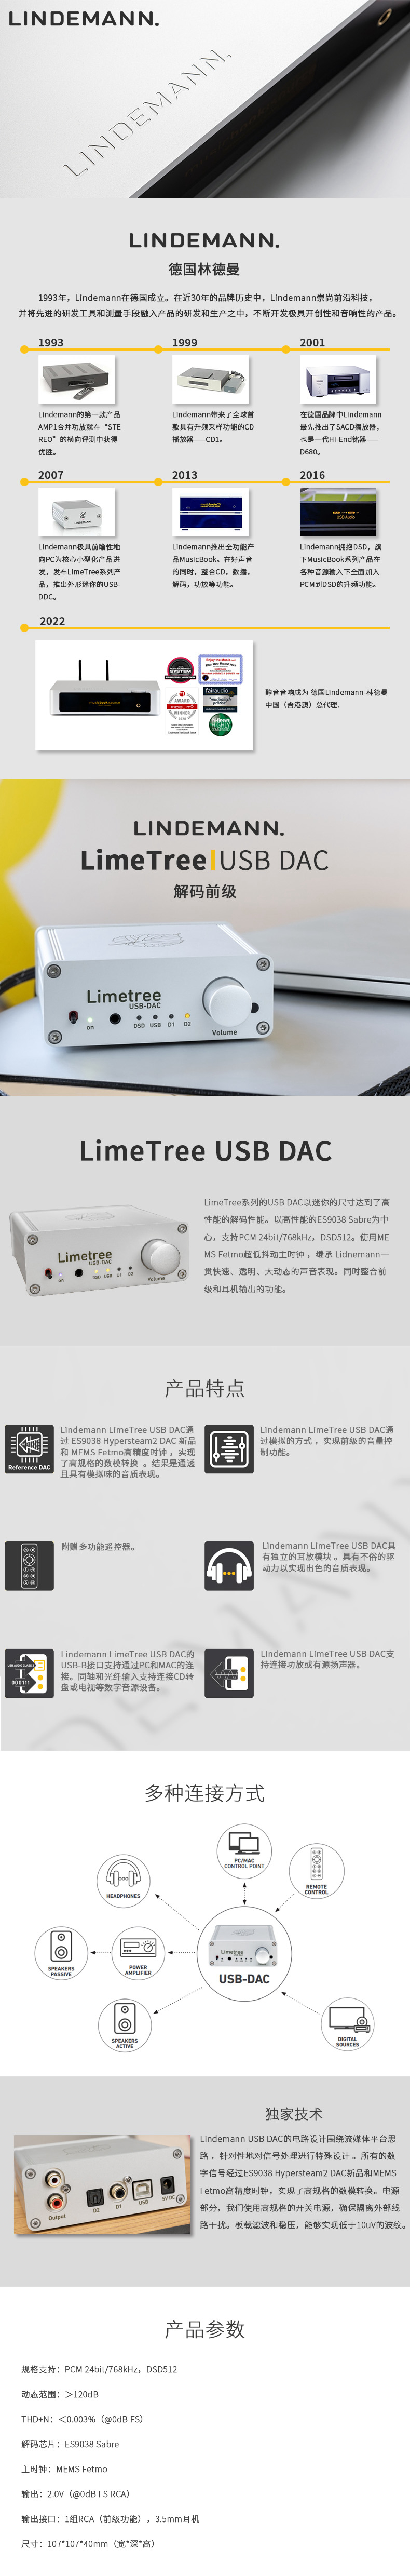 USBDAC.jpg